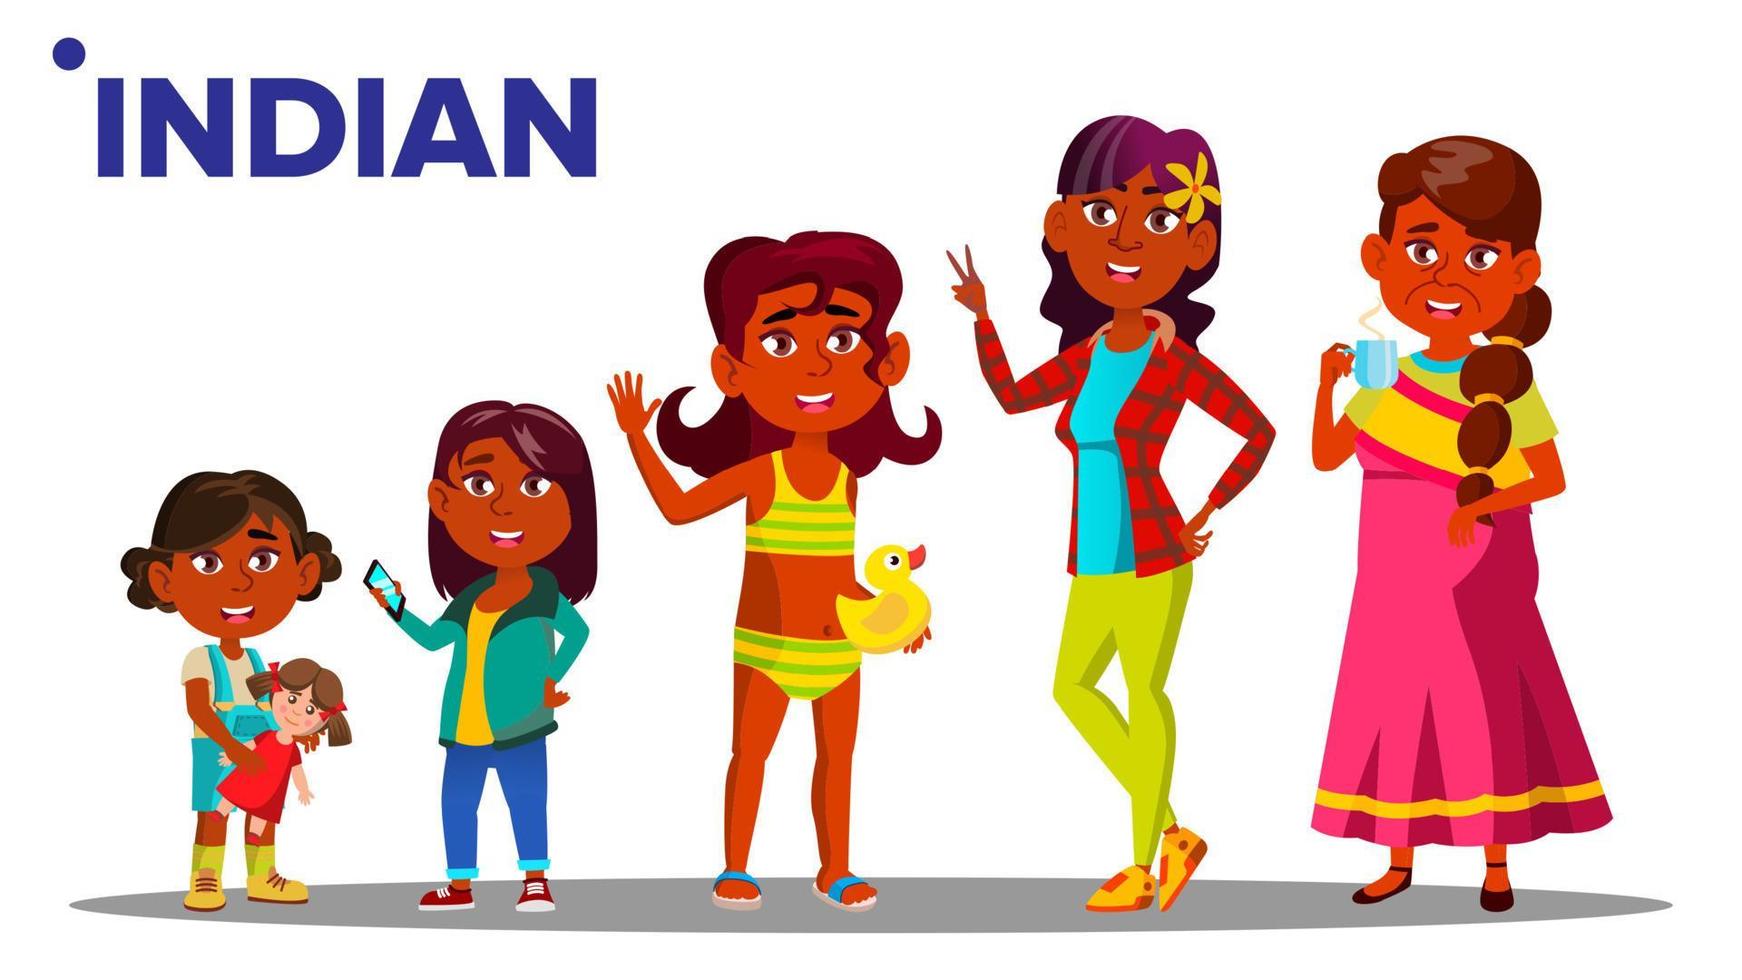 vetor de pessoa do sexo feminino de geração indiana. mãe indiana, filha, neta, bebê, adolescente. vetor. ilustração isolada